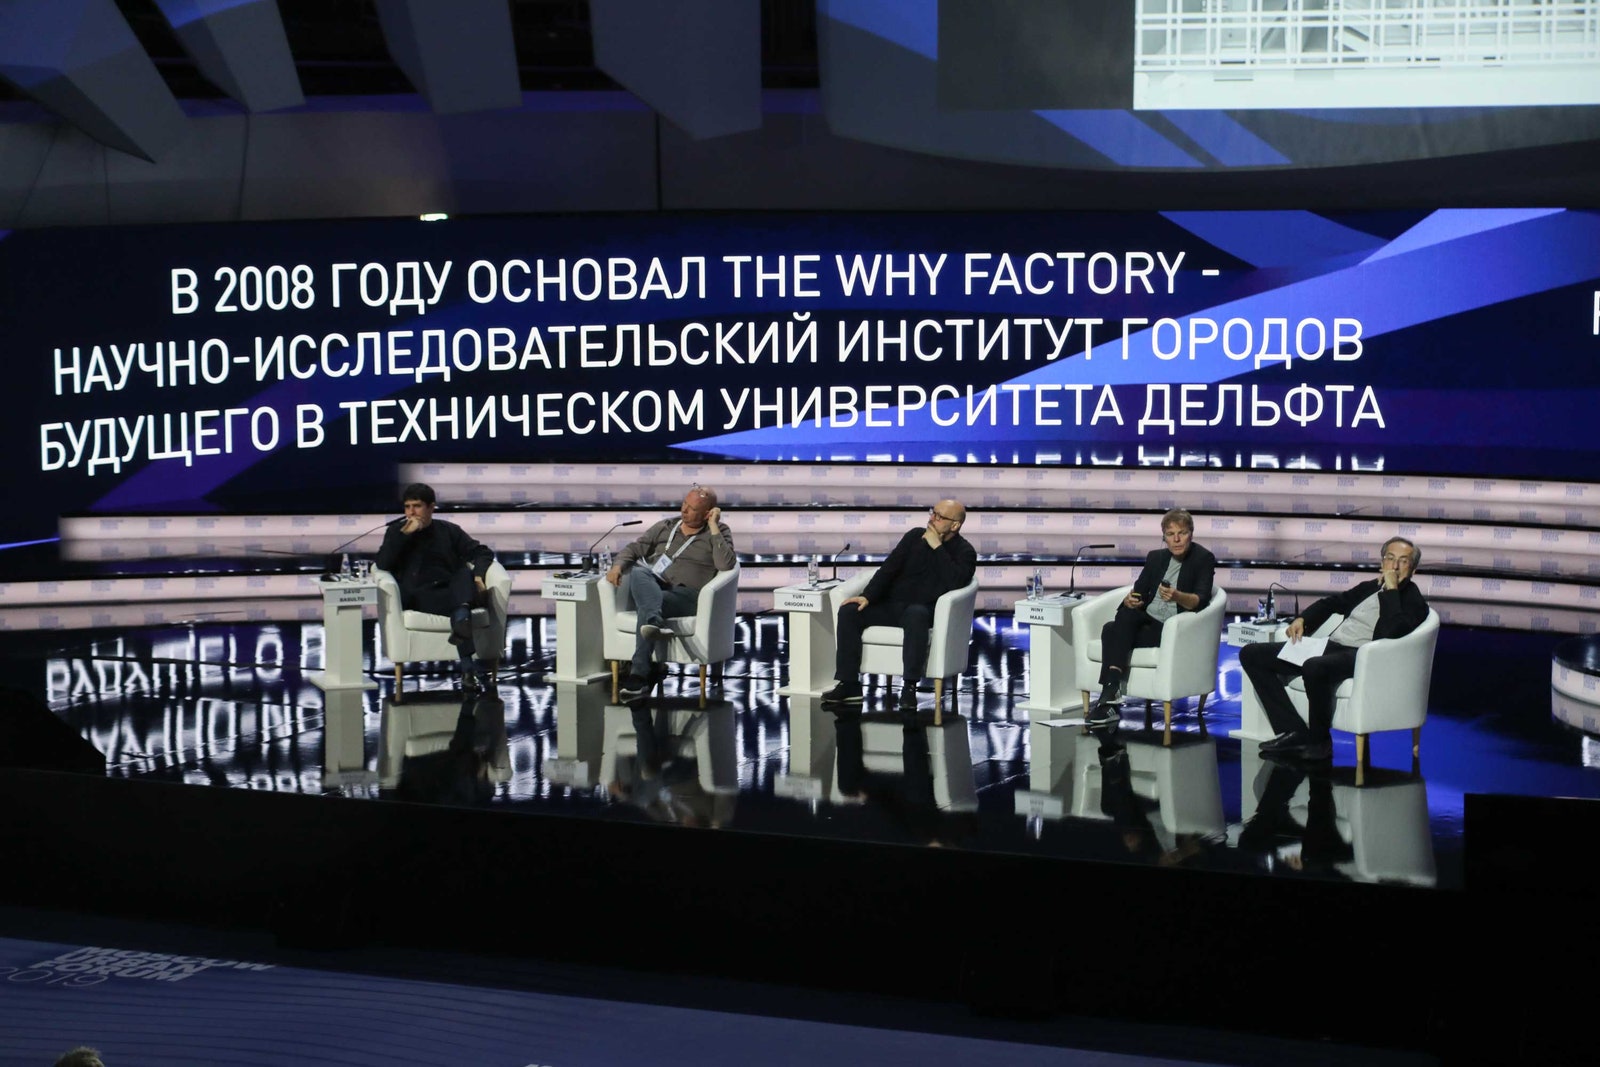 Архитекторы рассуждают о жилой застройке будущего на Moscow Urban Forum 2019